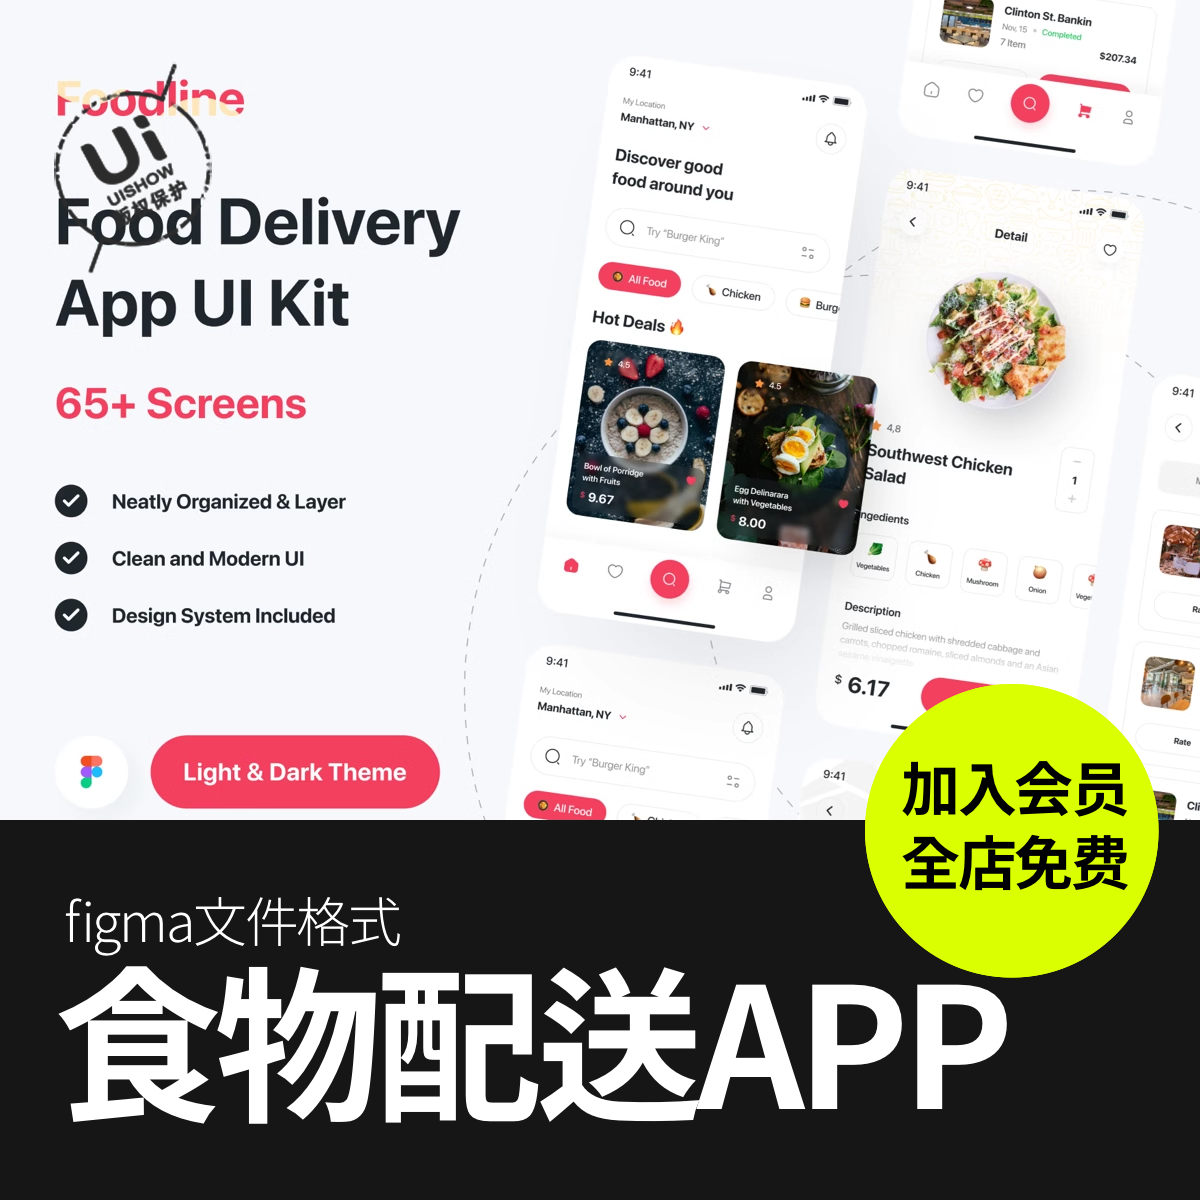 送餐食品食物配送外卖点餐餐饮App应用程序UI界面figma格式素材